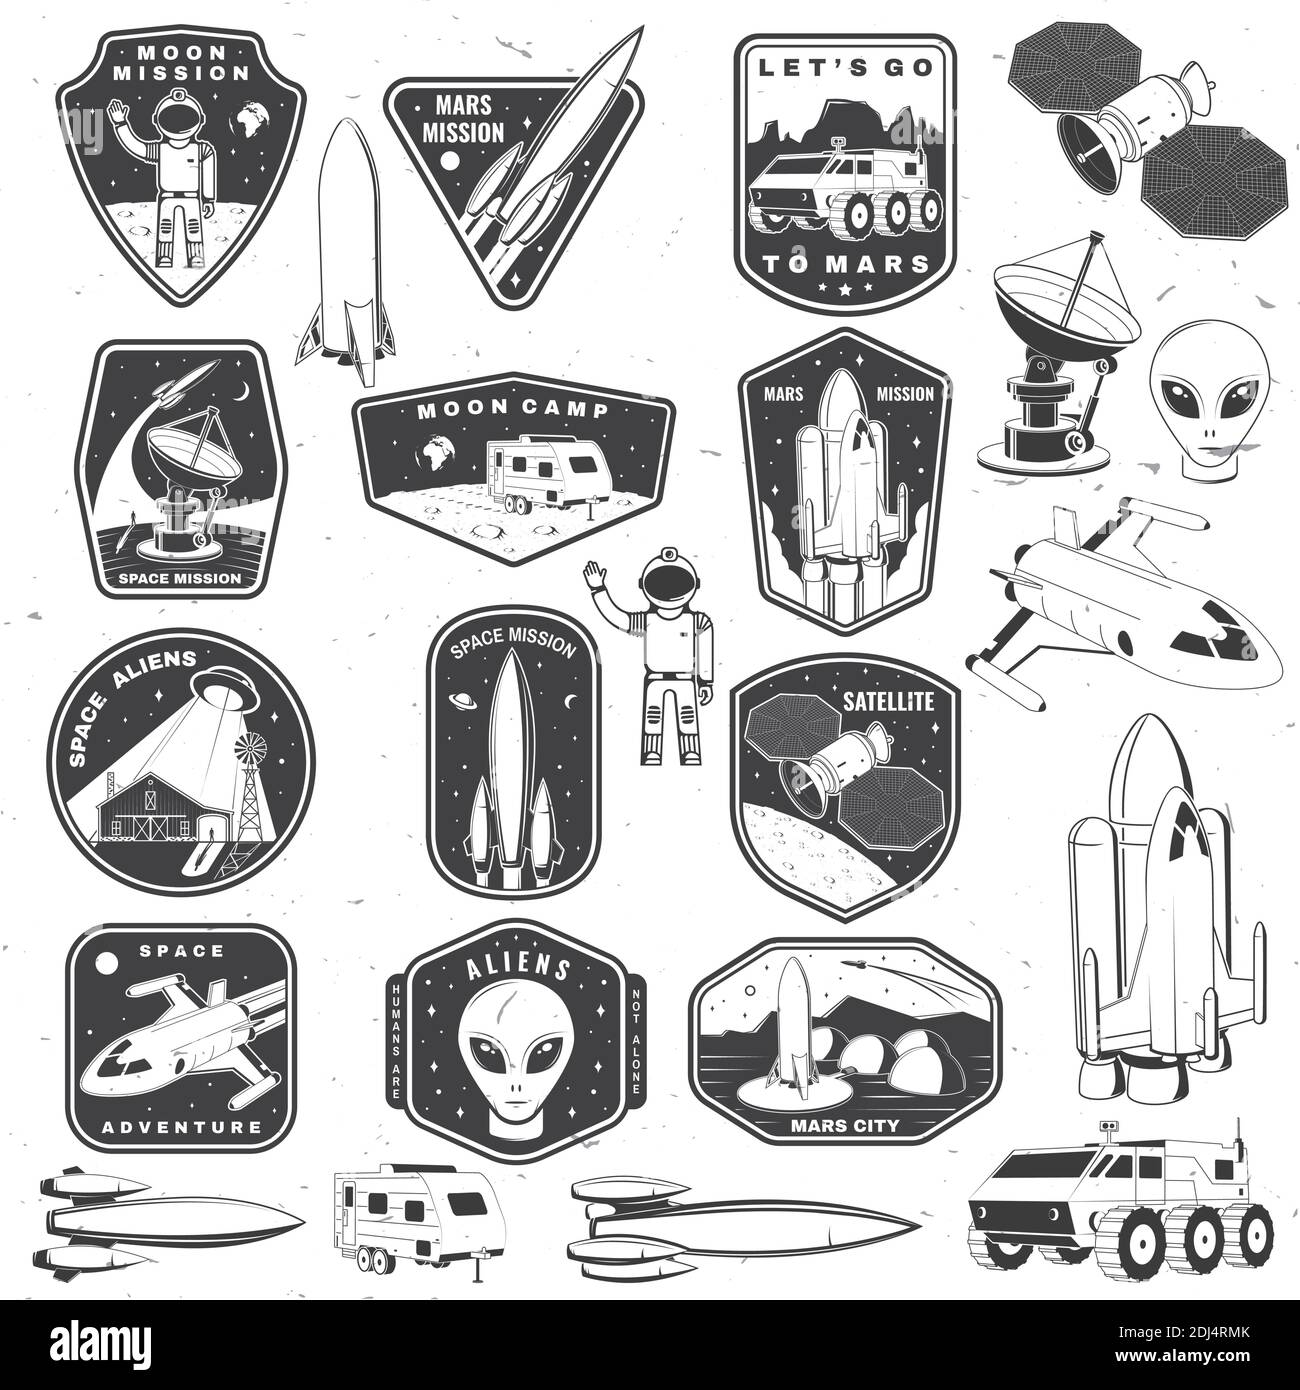 Set von Space Mission Logo, Abzeichen, Patch. Vektor Illustration Konzept  für Hemd, Druck, Stempel. Vintage Typografie Design mit Raumrakete, Alien,  mars City, Wohnmobil auf dem Mond und Erde Silhouette Stock-Vektorgrafik -  Alamy